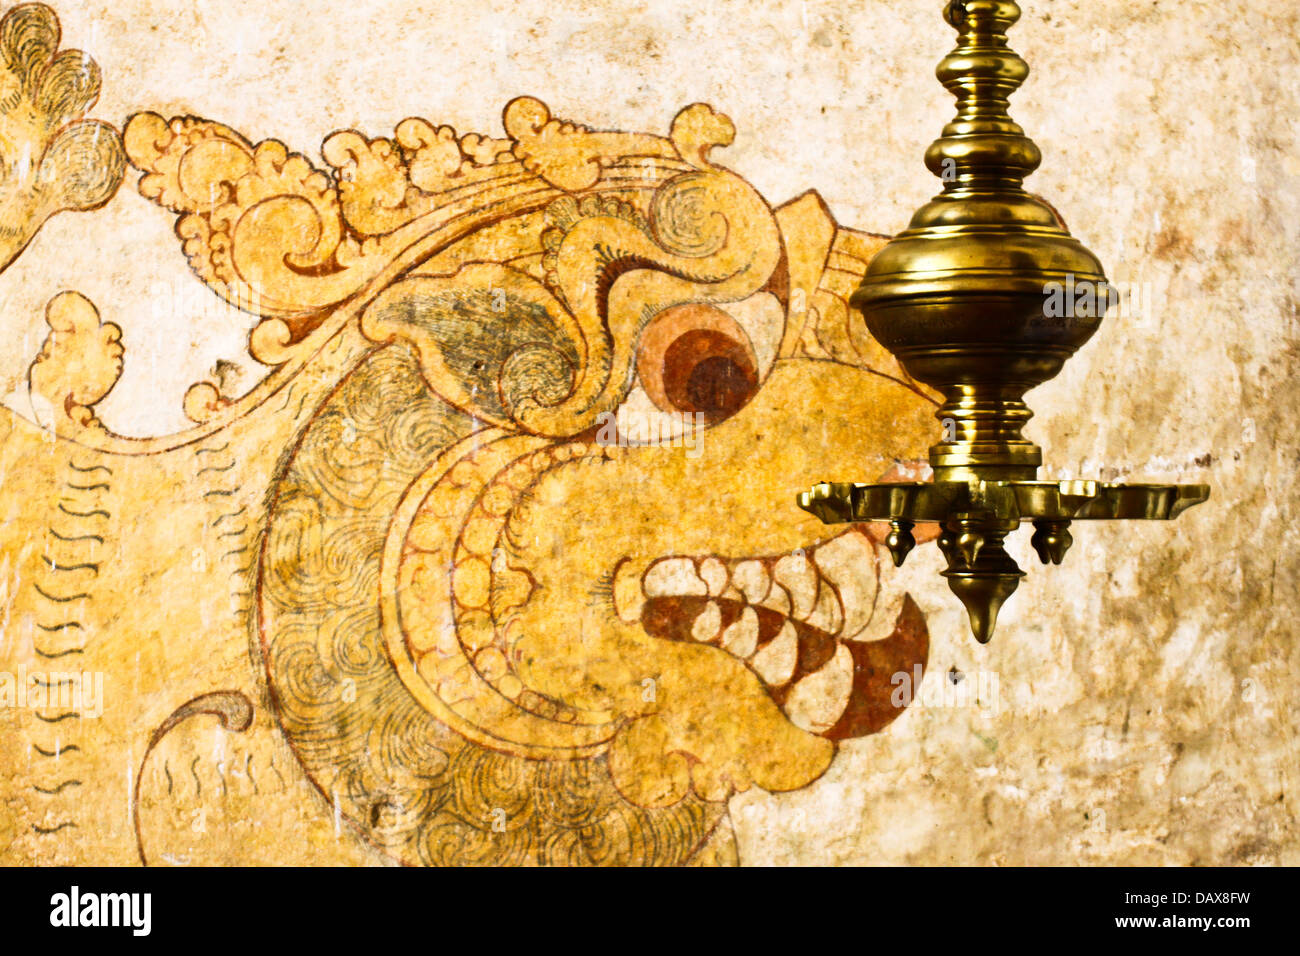 Photo murale d'un lion à l'entrée de Temple Bouddhiste Lankatilaka, près de Kandy, Sri Lanka. Banque D'Images